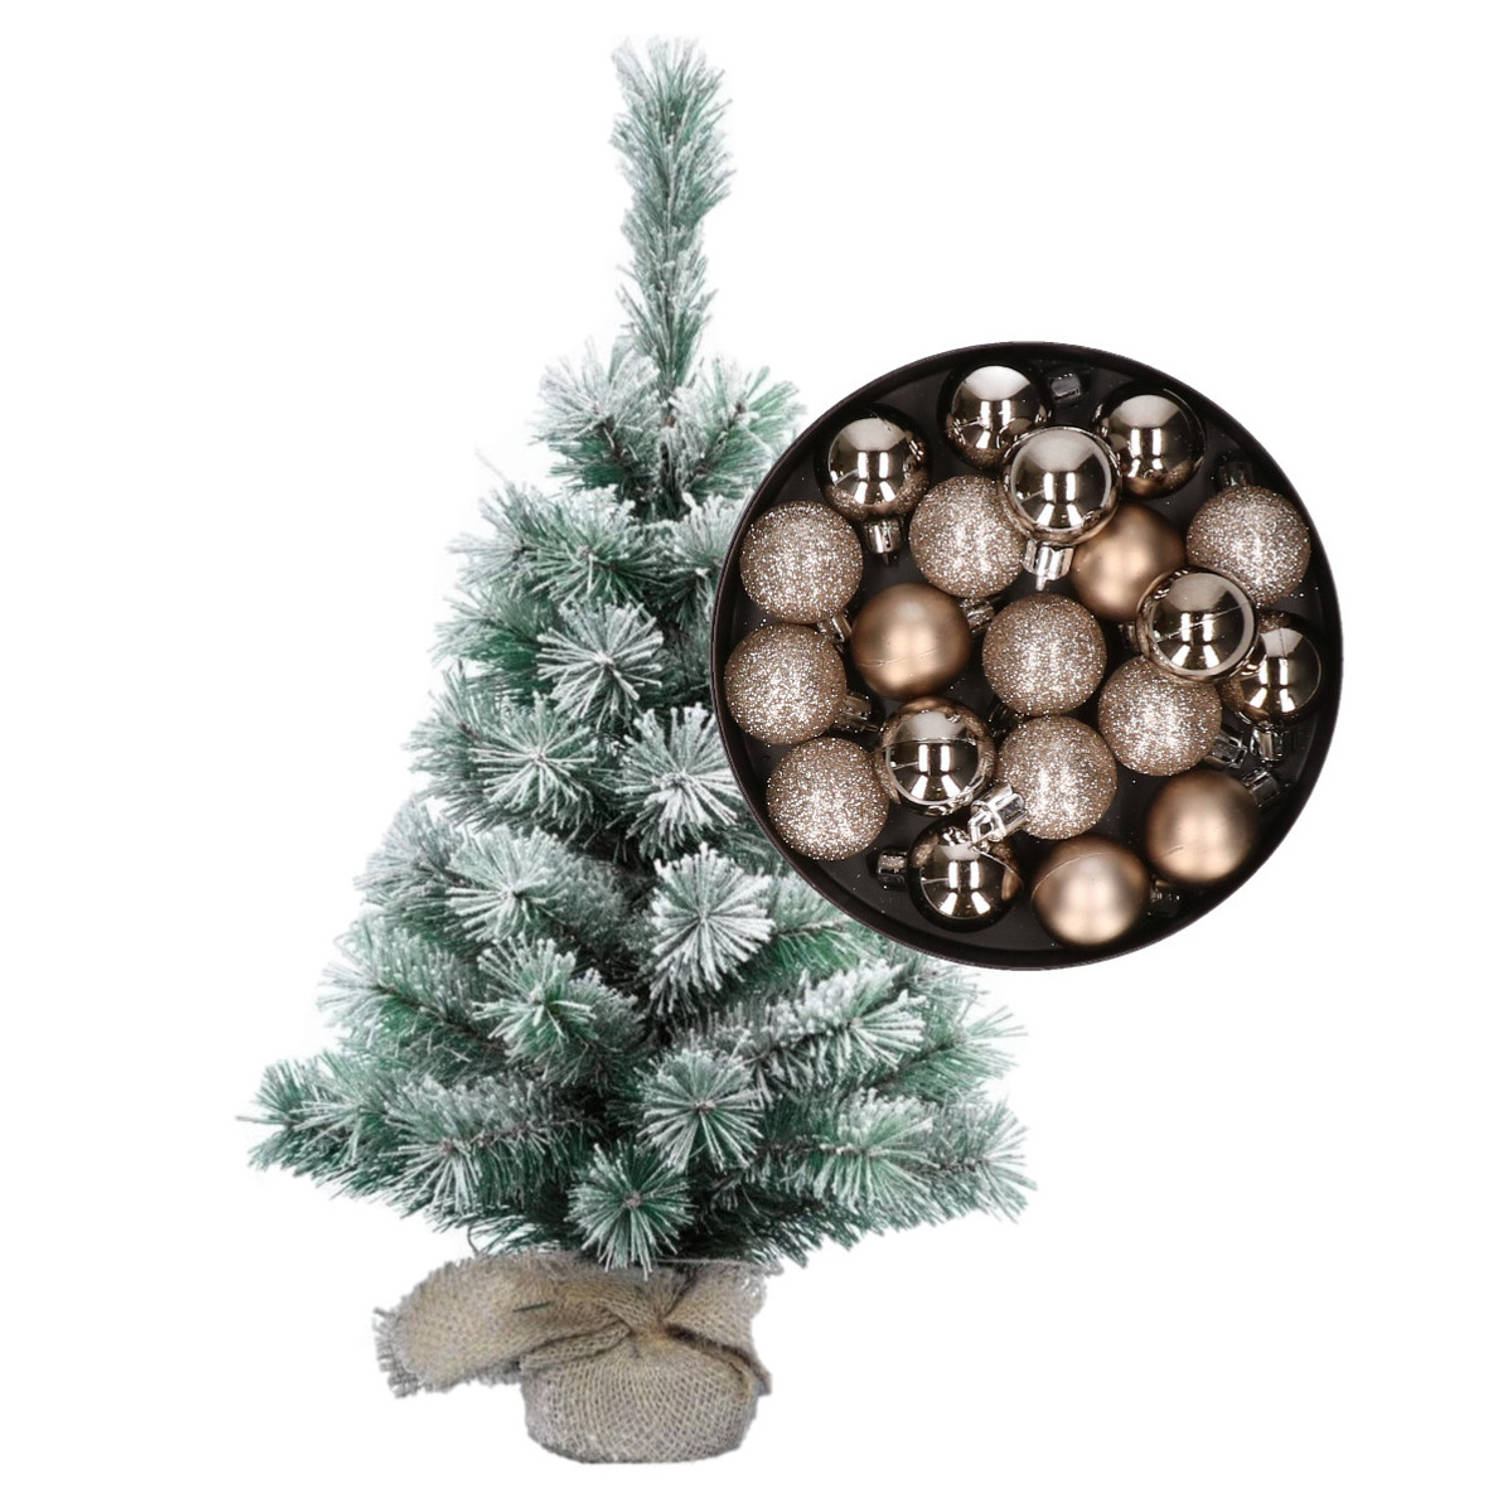 Besneeuwde mini kerstboom-kunst kerstboom 35 cm met kerstballen champagne Kunstkerstboom